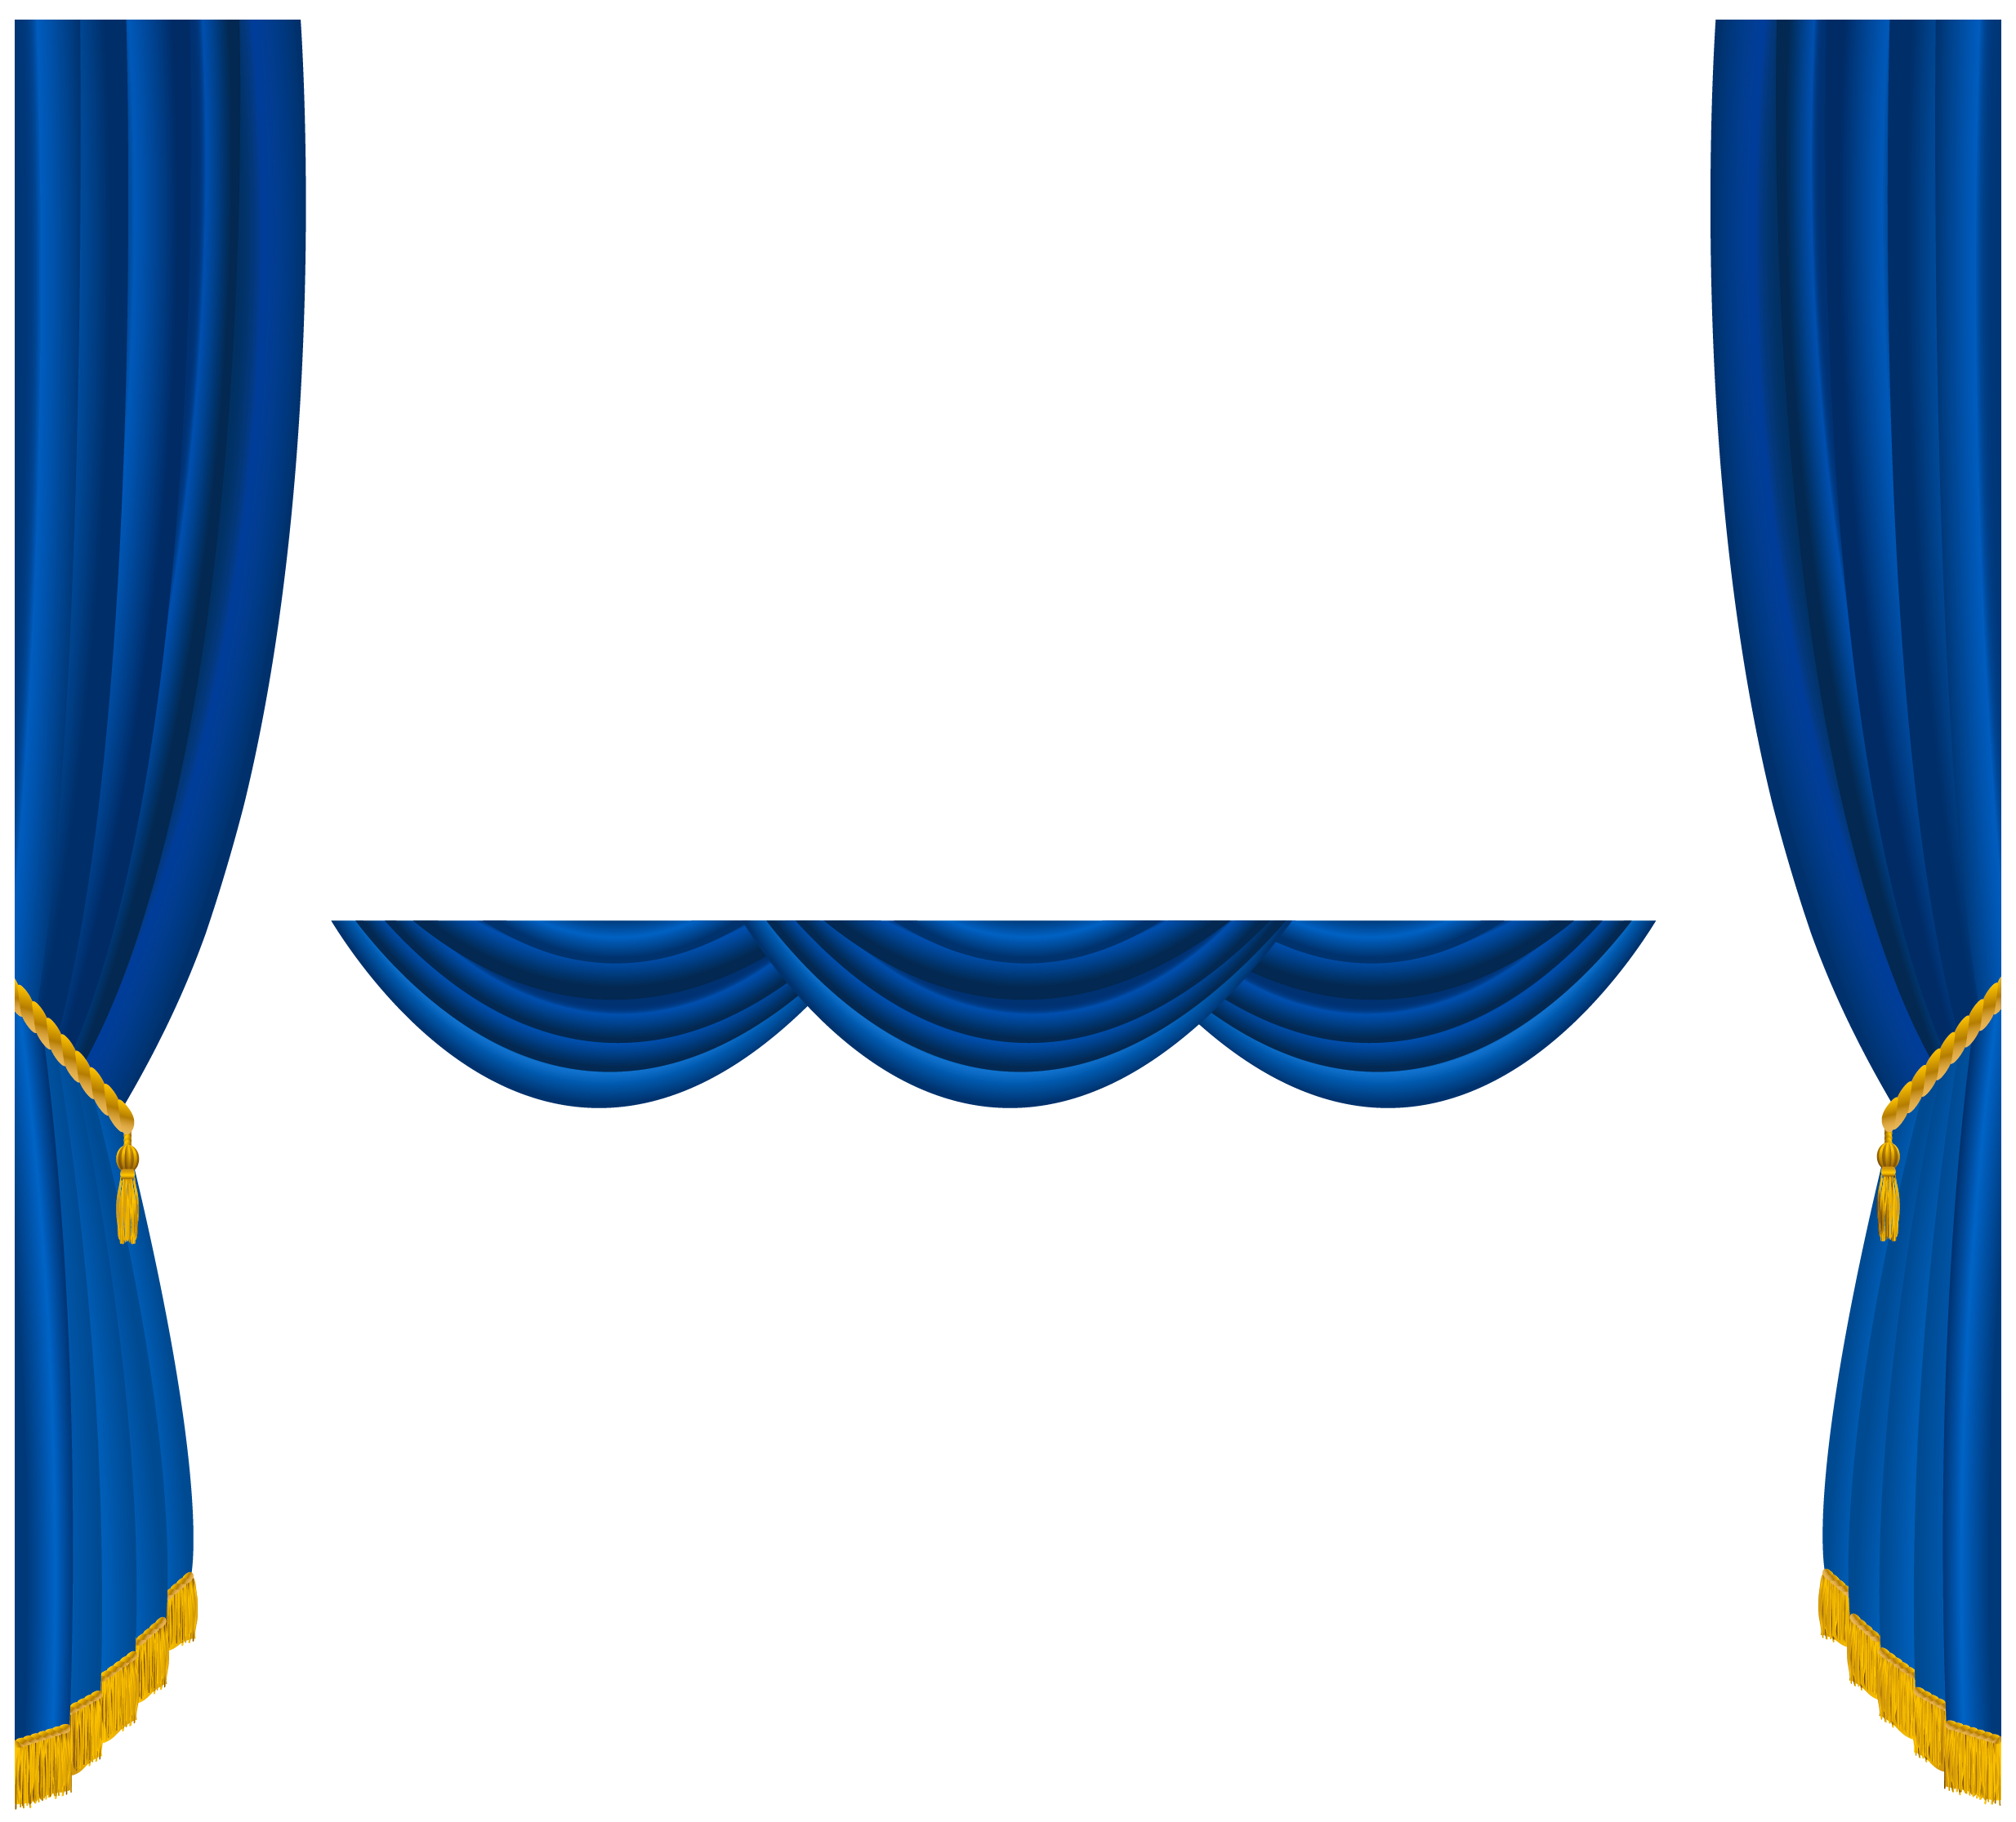 Transparent blue curtains.